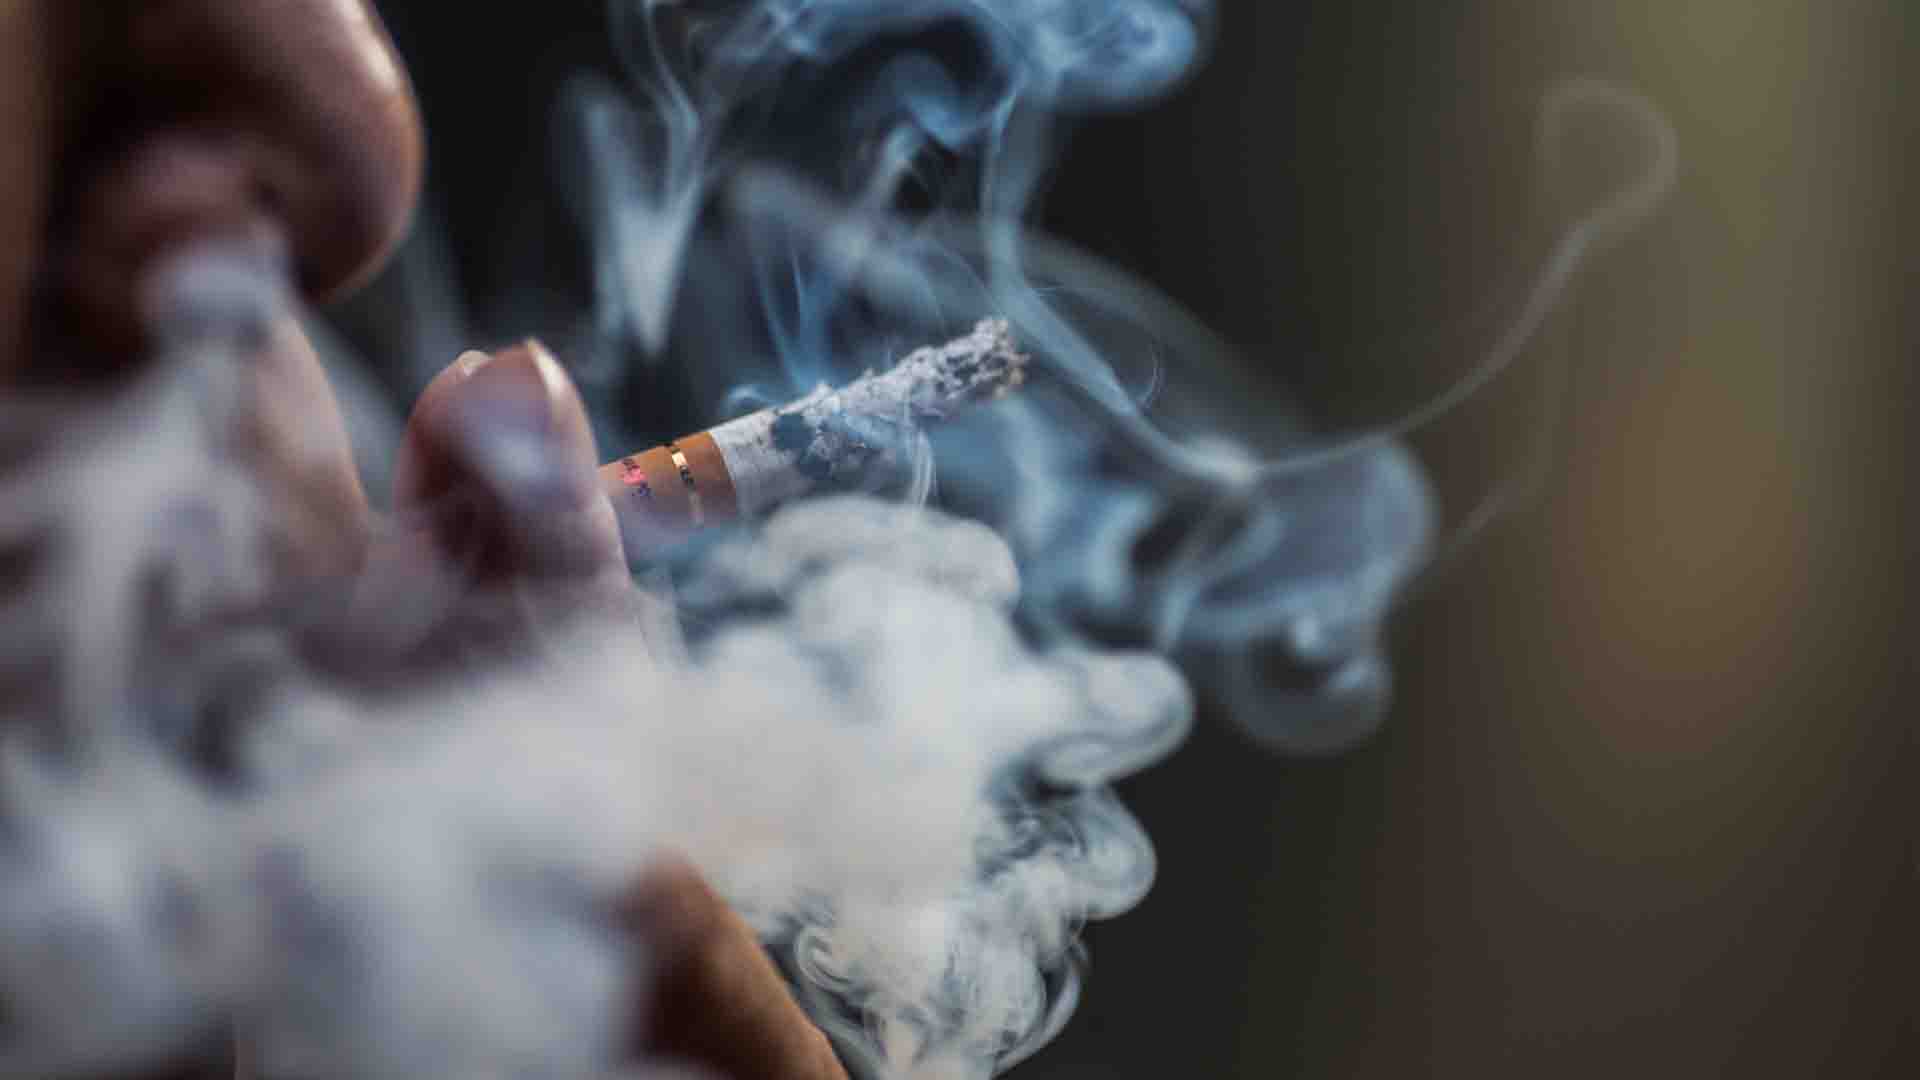 personne fumant une cigarette, risque de cancer du poumon lié à la fumée de cigarette2